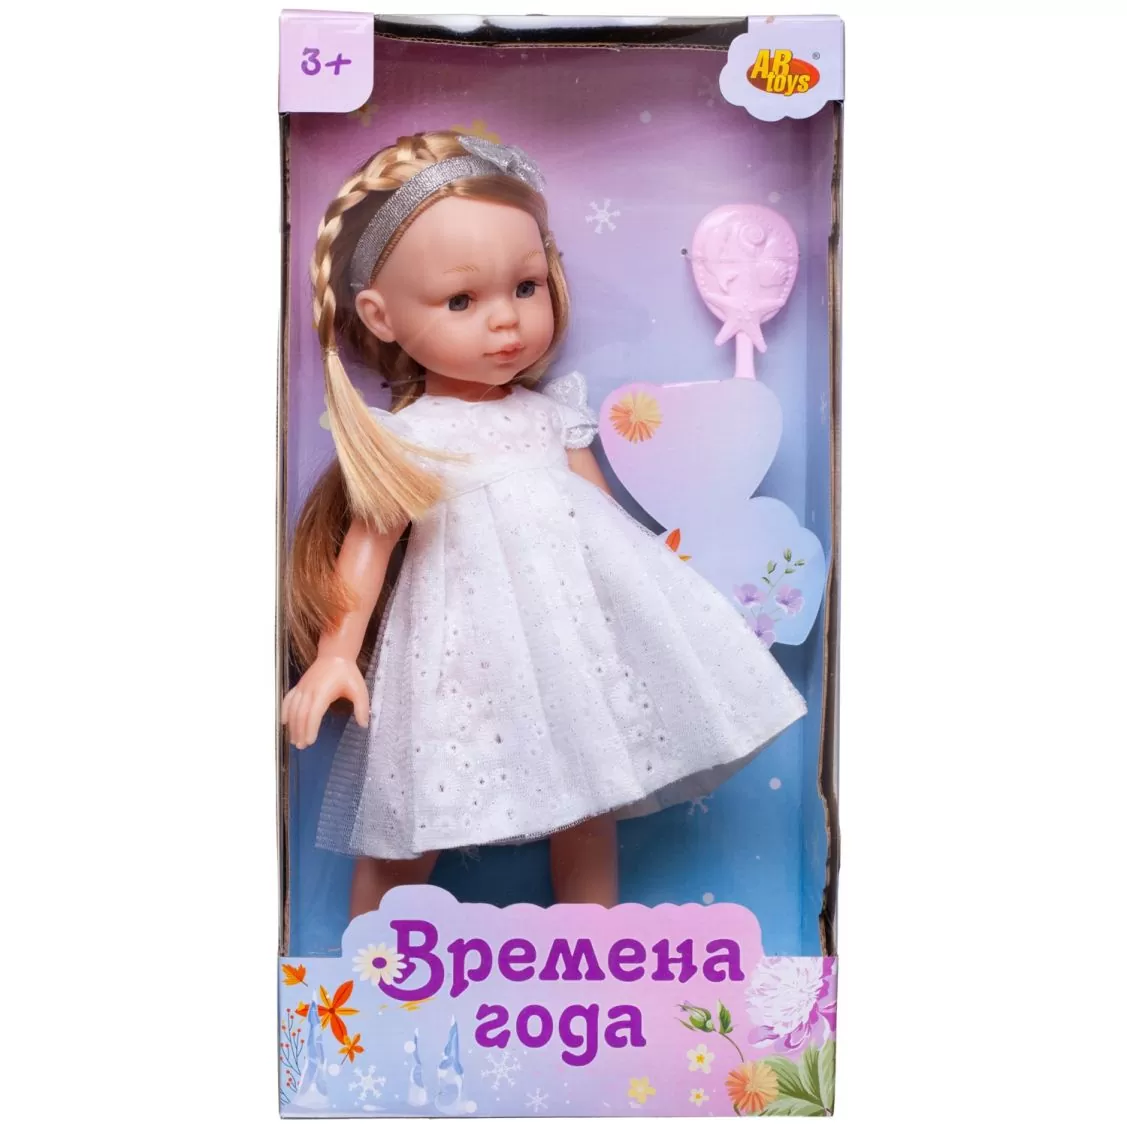 Кукла "Времена года" - фото